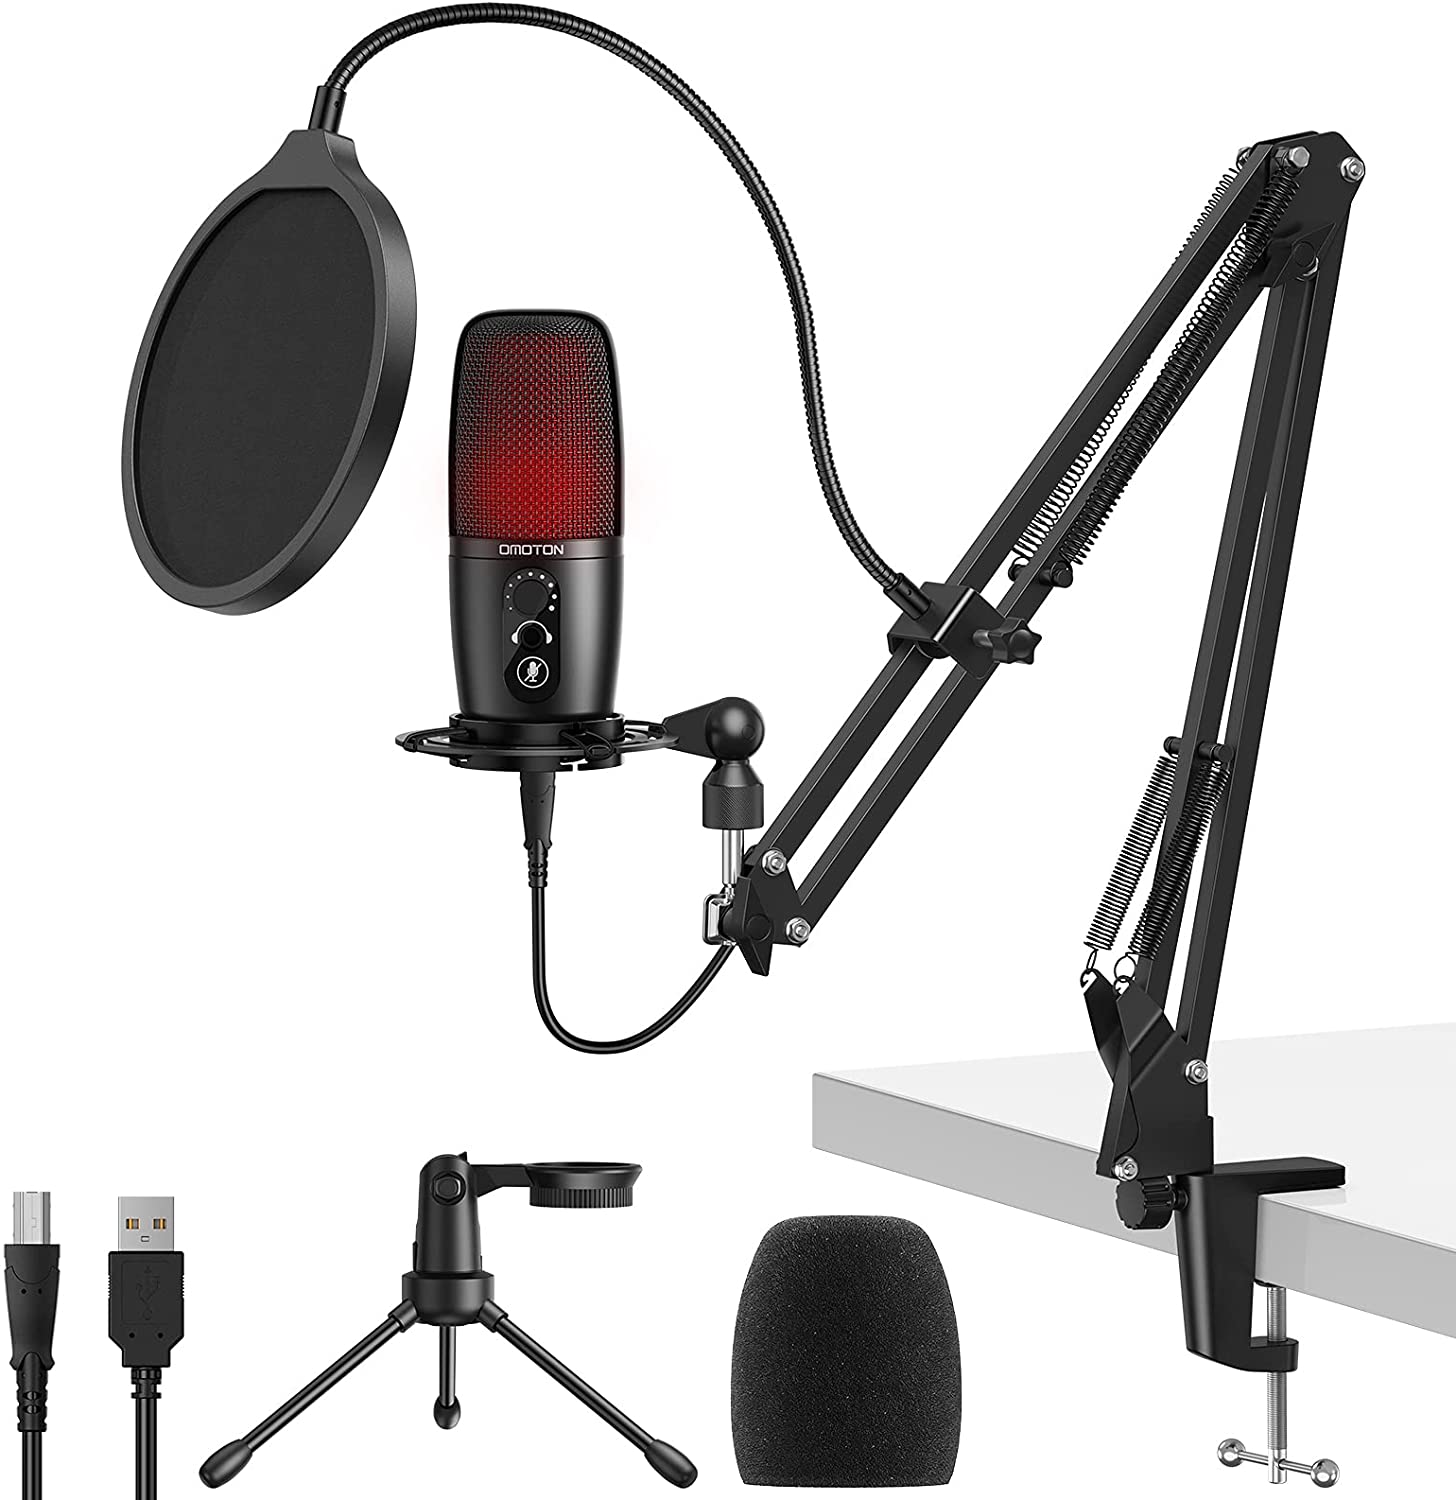 Bild zu OMOTON Kondensatormikrofon mit Stummschaltungstaste und Kopfhörerbuchse für 34,99€